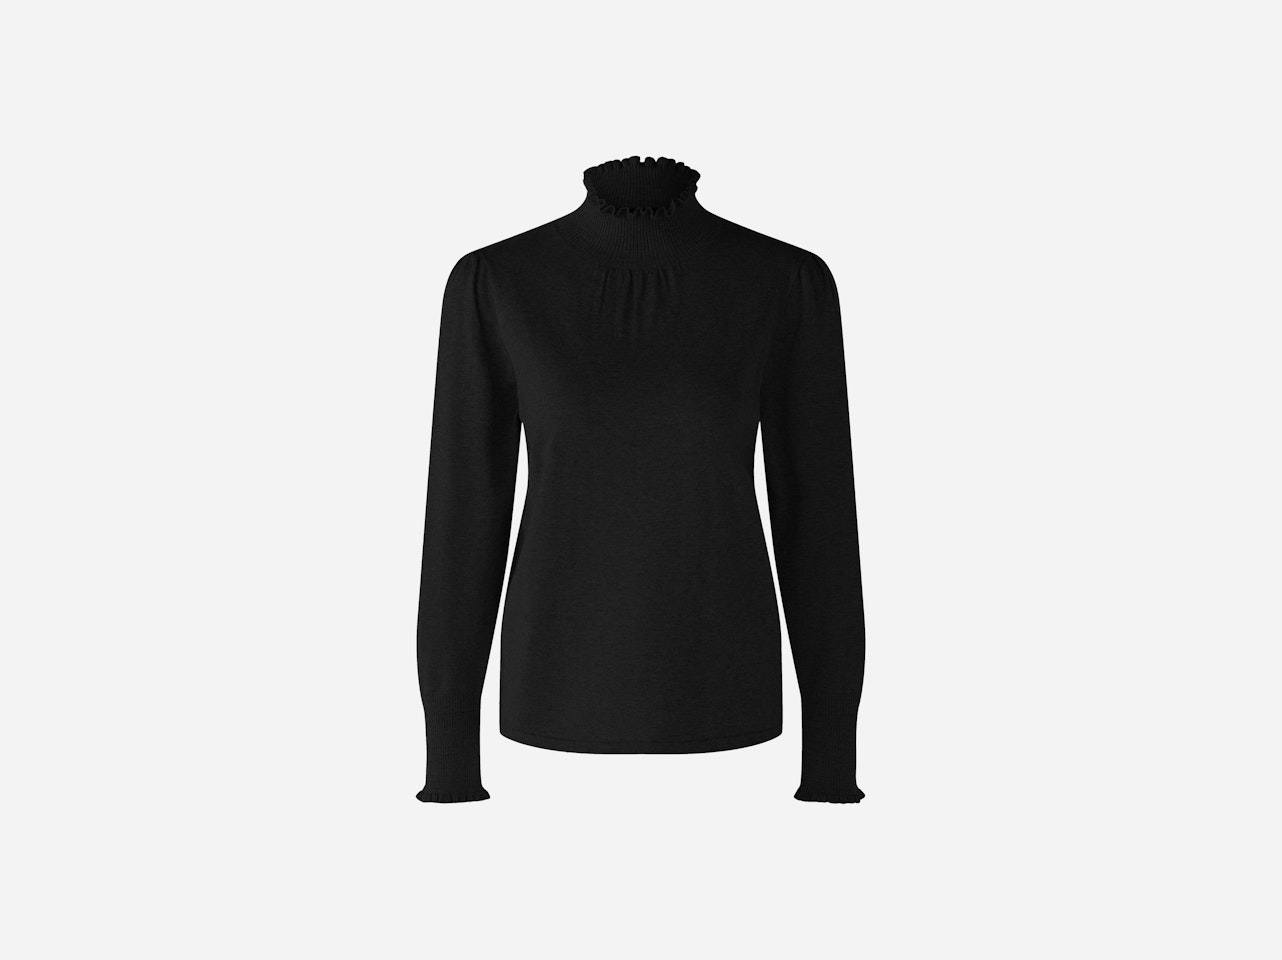 Bild 1 von Jumper in cotton blend with silk and cashmere in black | Oui